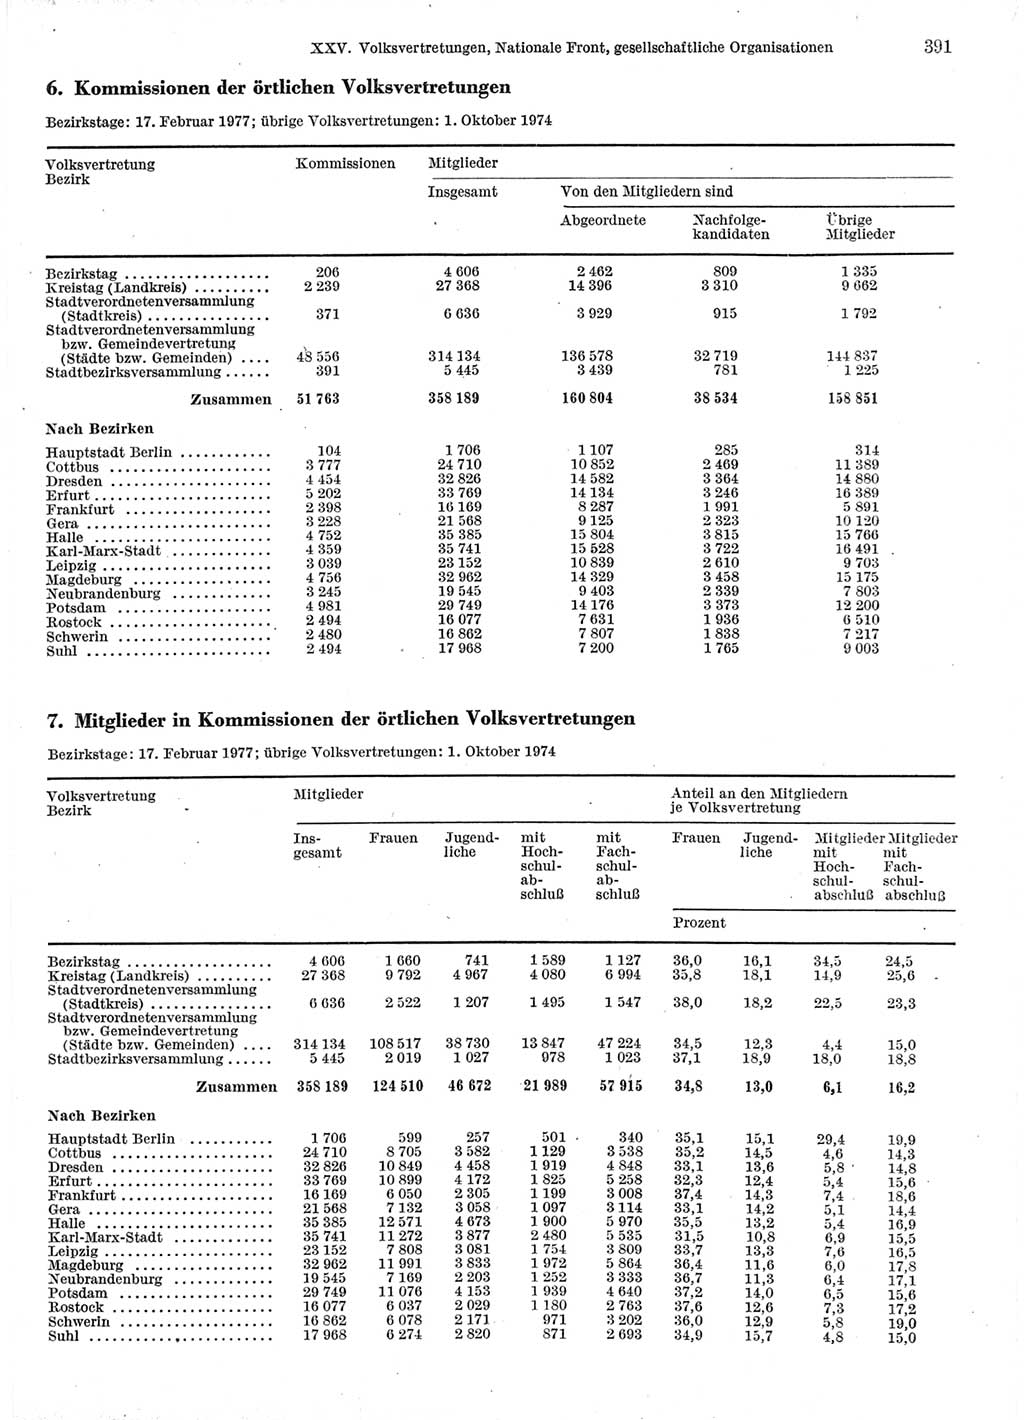 Statistisches Jahrbuch der Deutschen Demokratischen Republik (DDR) 1978, Seite 391 (Stat. Jb. DDR 1978, S. 391)